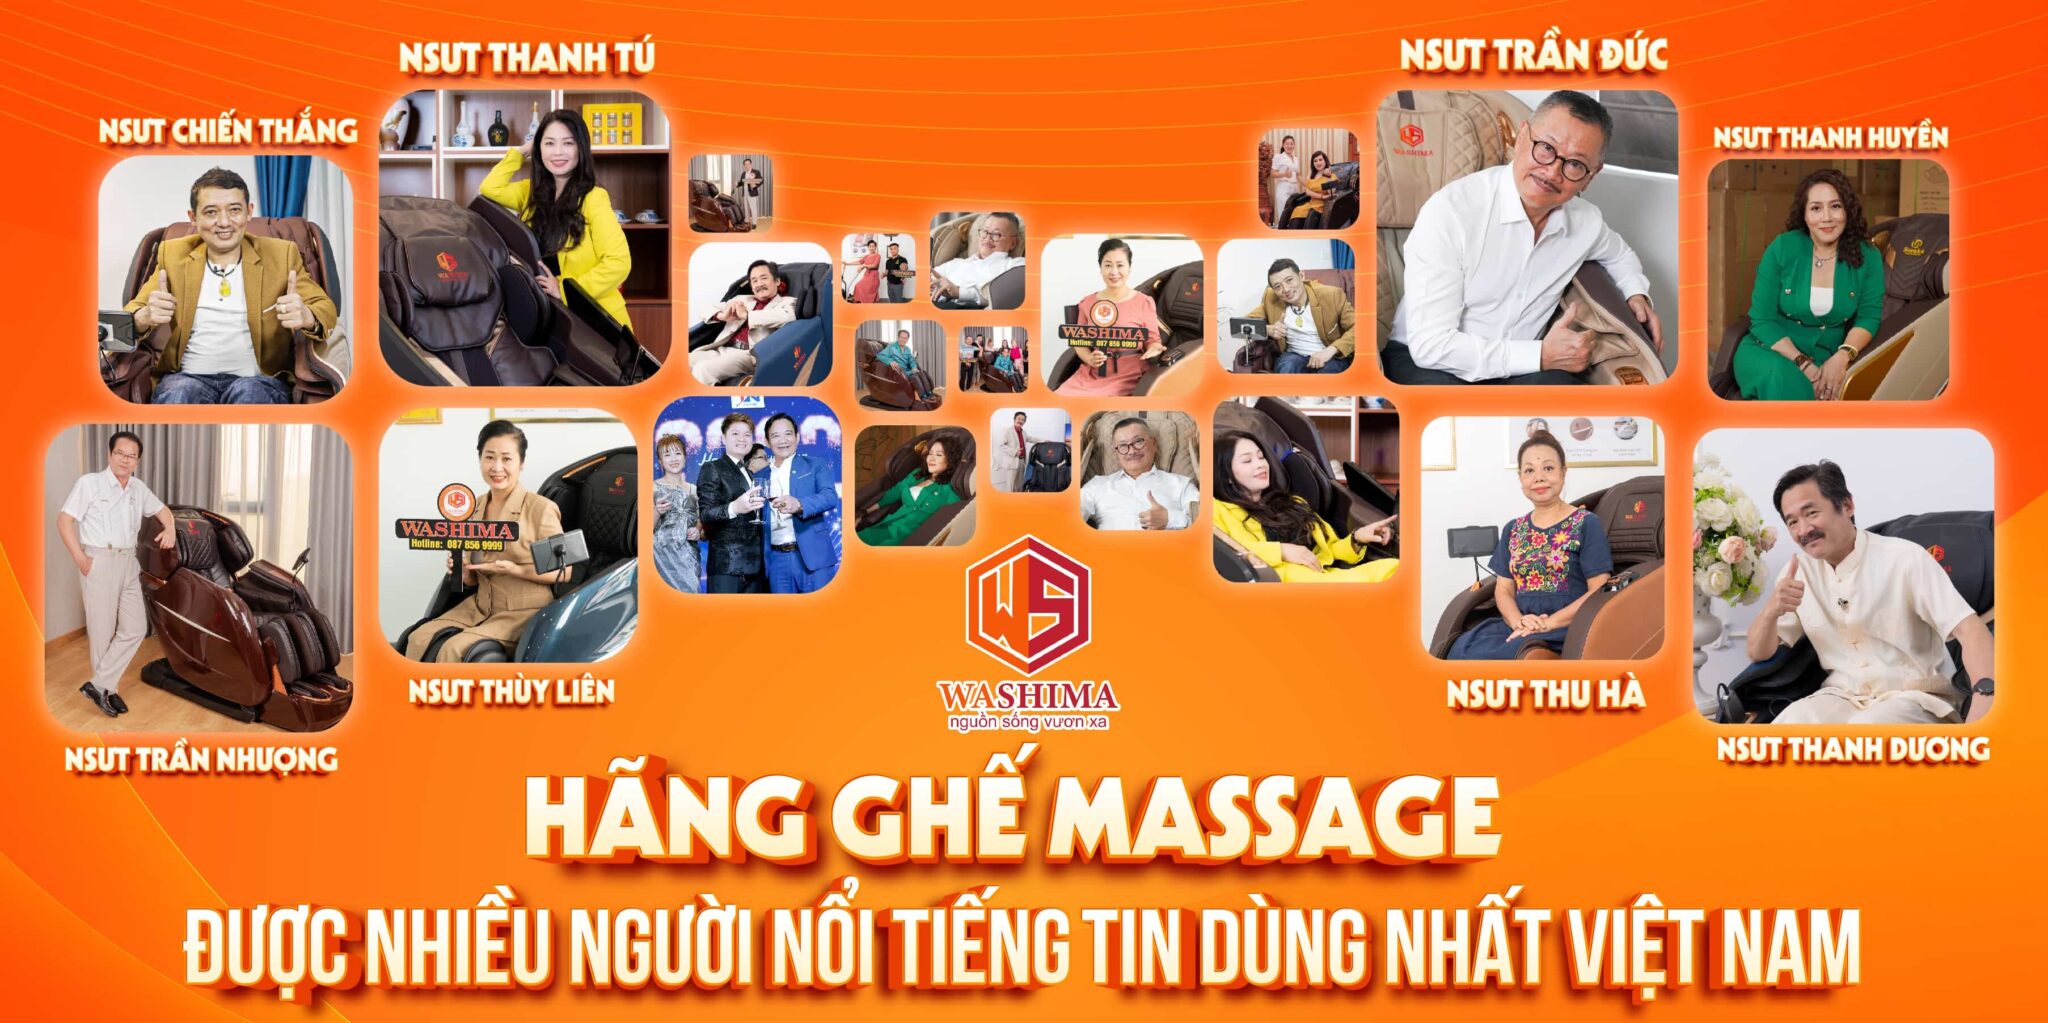 Thương hiệu máy massage Washima hiện được nhiều người nổi tiếng tin dùng